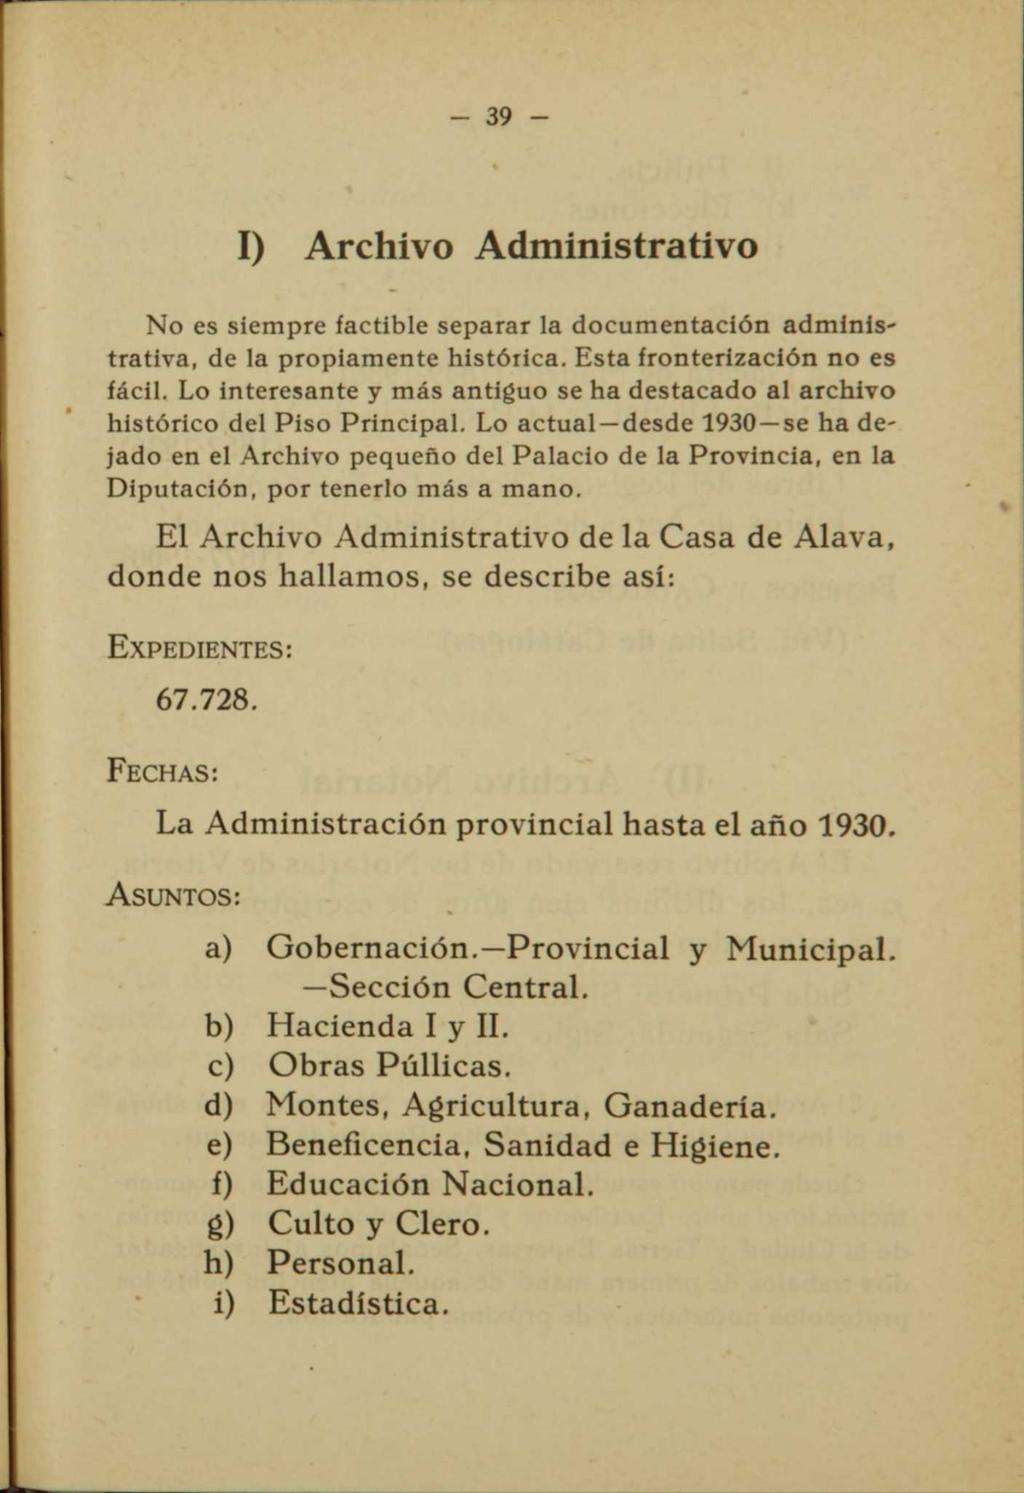 - 39 - I) Archivo Administrativo No es siempre factible separar la documentación administrativa, de la propiamente histórica. Esta fronterización no es fácil.